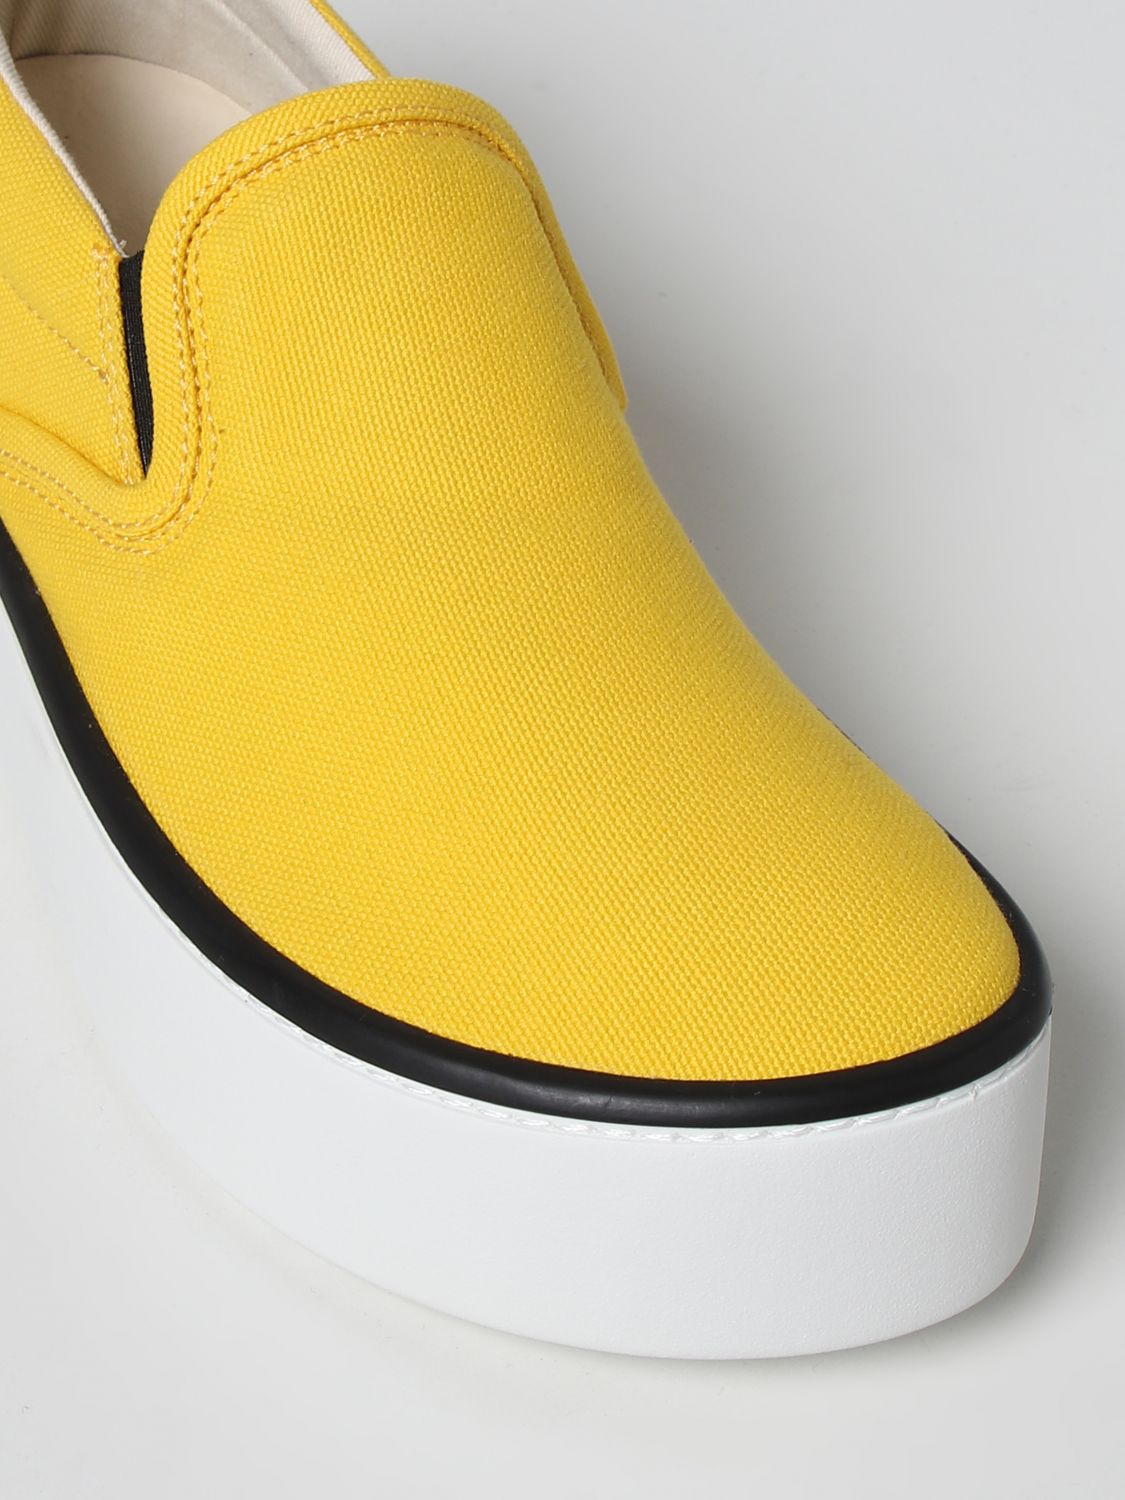 Sneakers Marni: Marni sneakers for women yellow 4